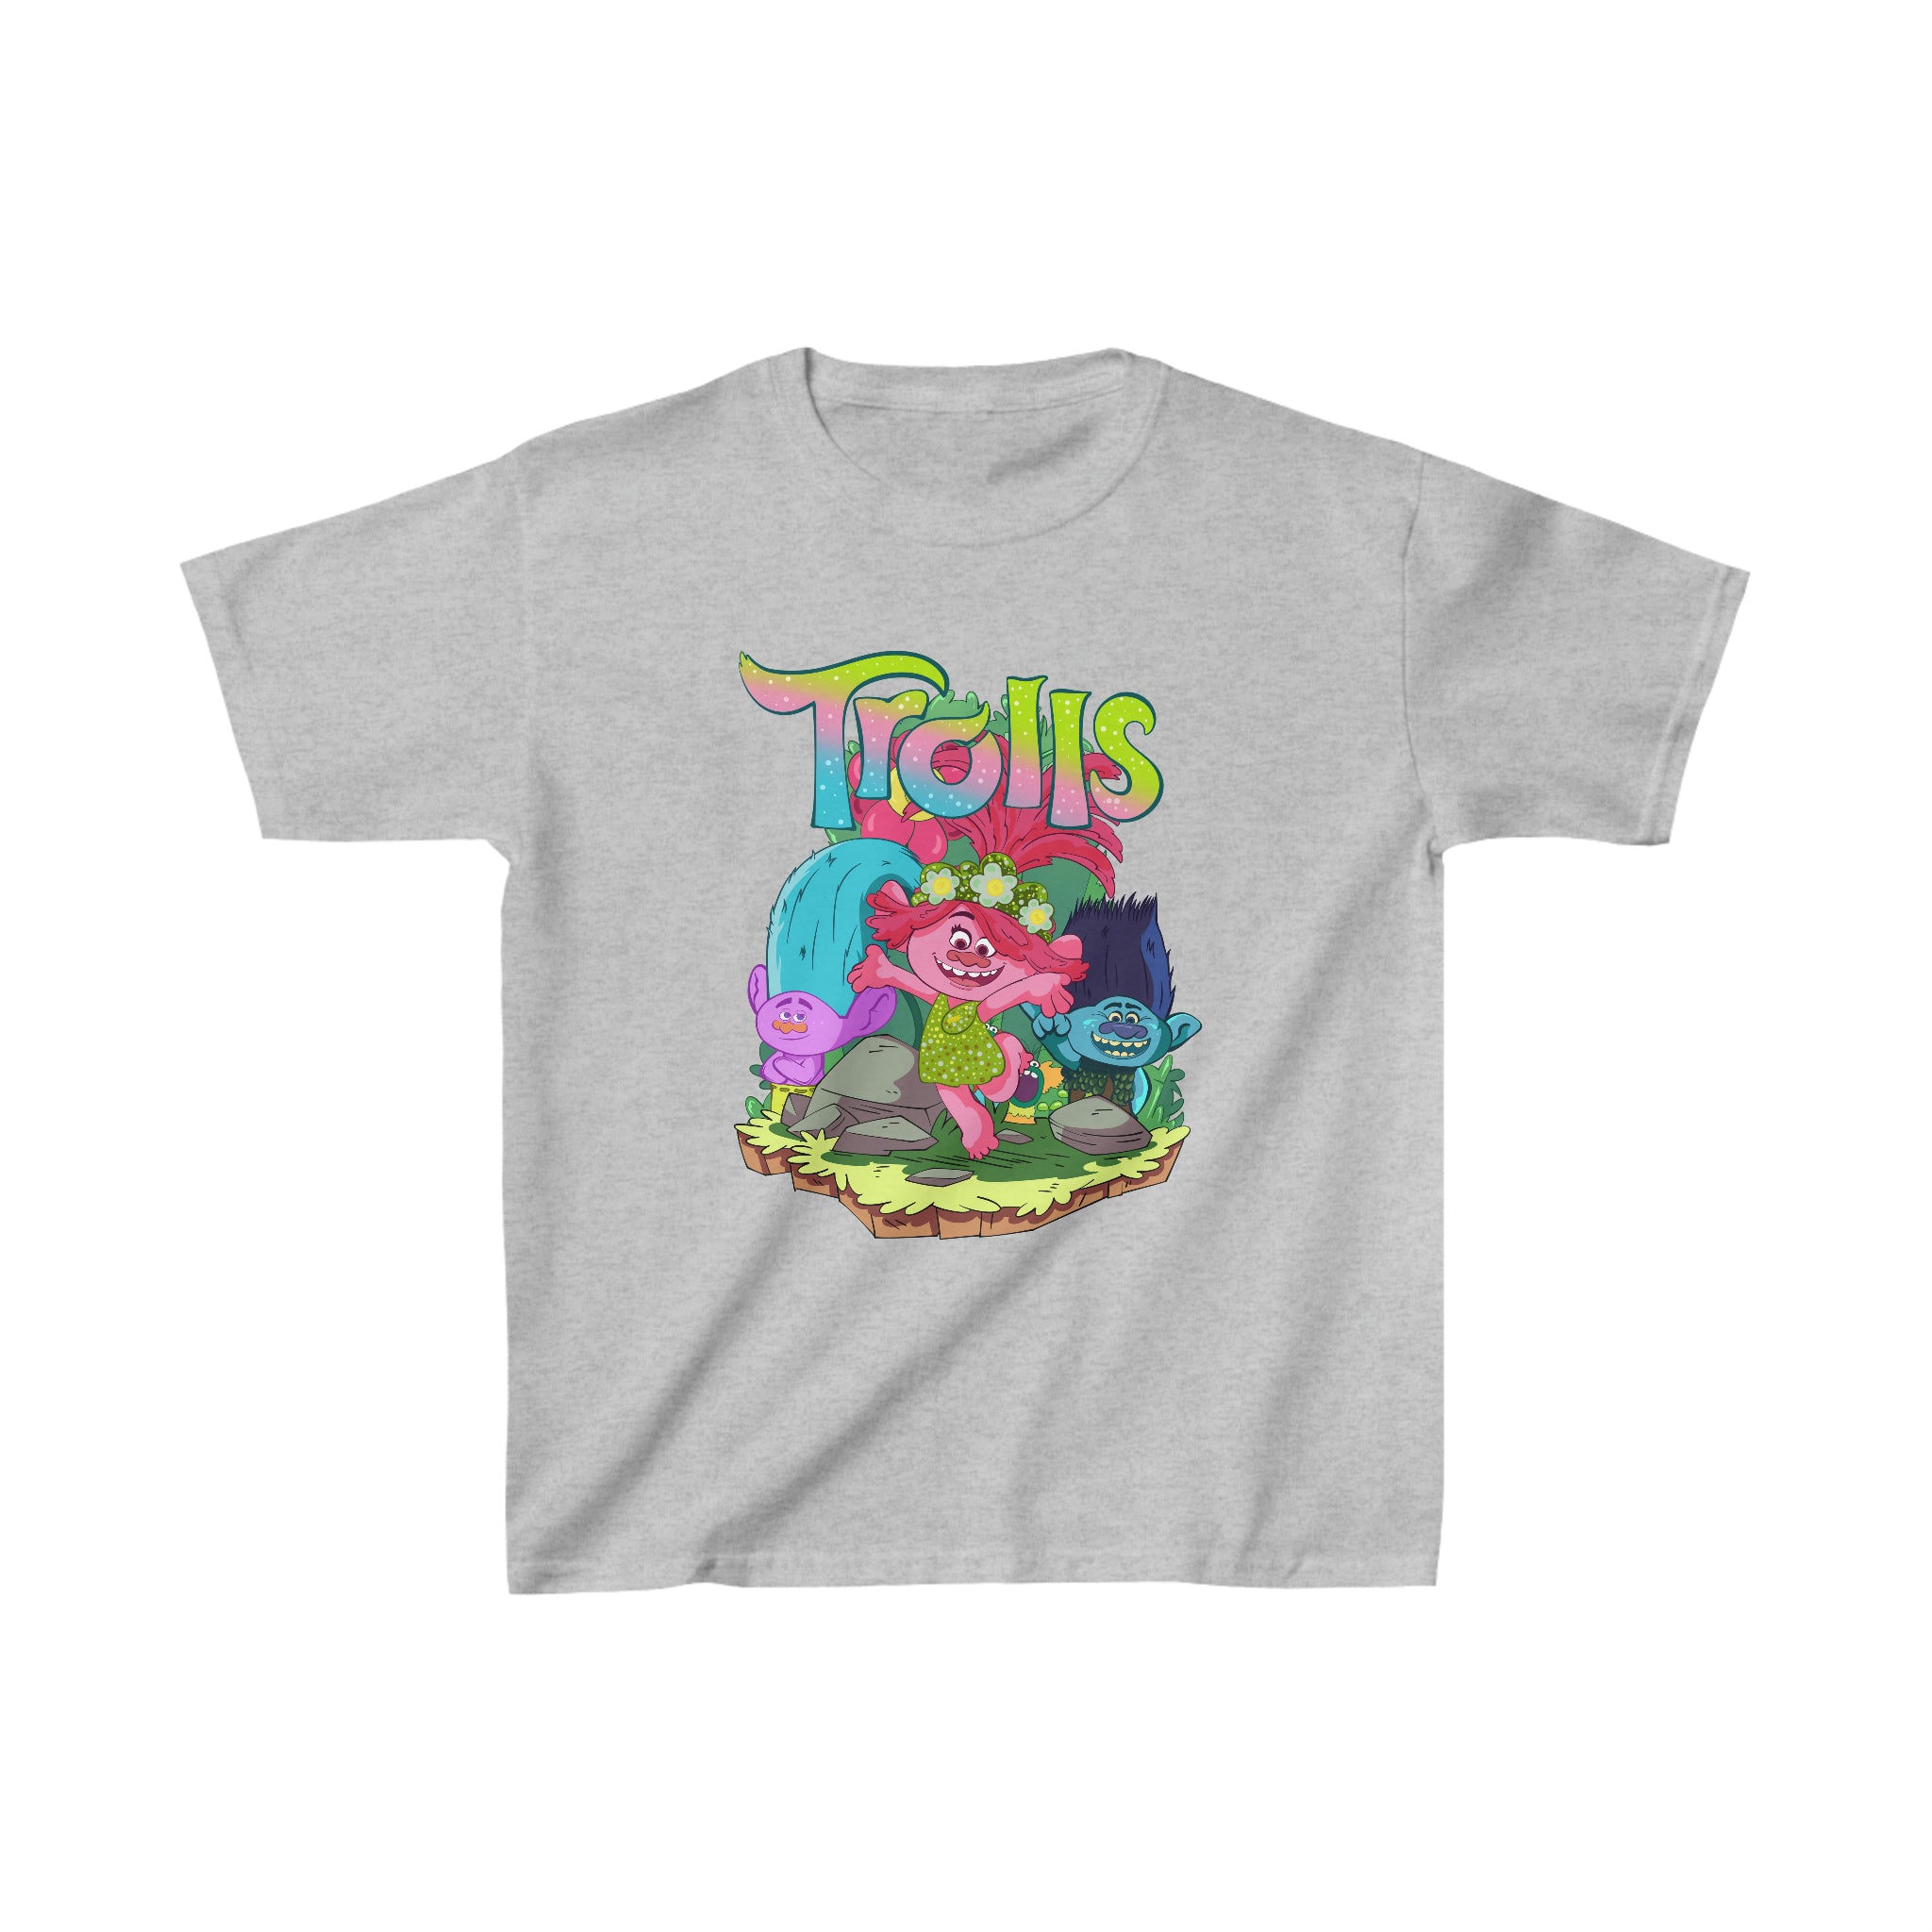 Vibrant Vibes (kids) T-Shirt